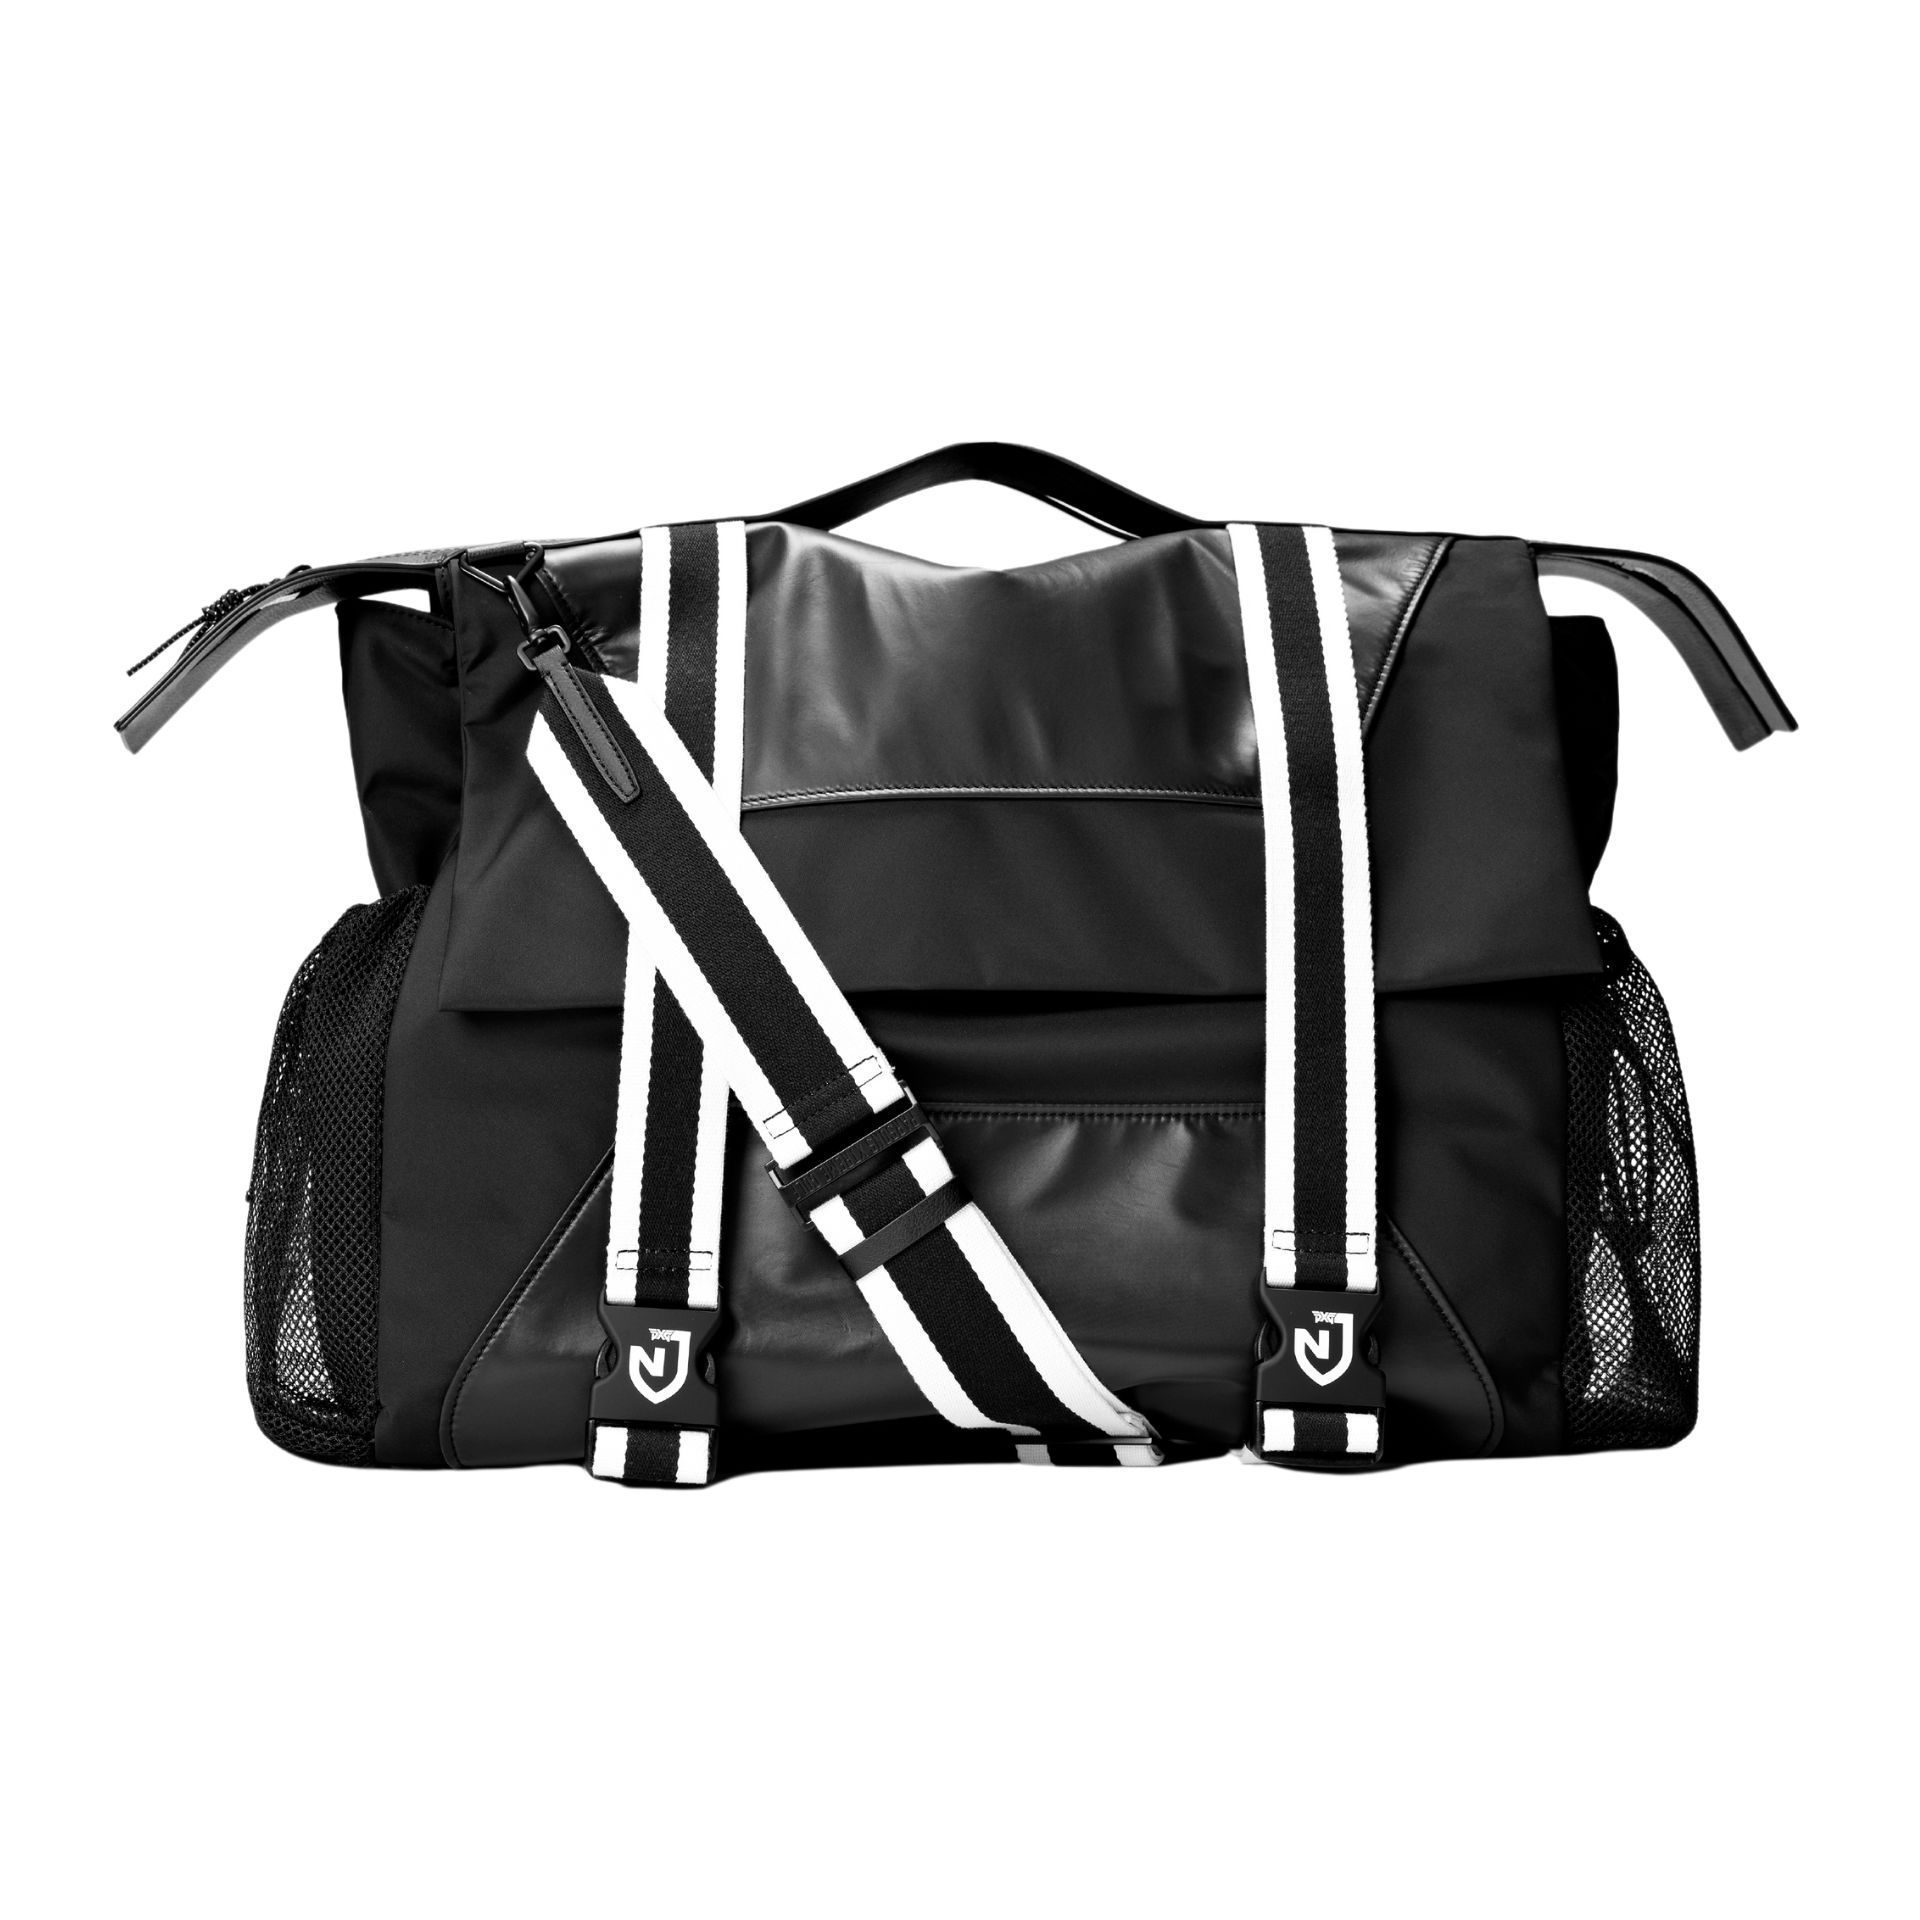 PXG x NJ Duffle Backpack